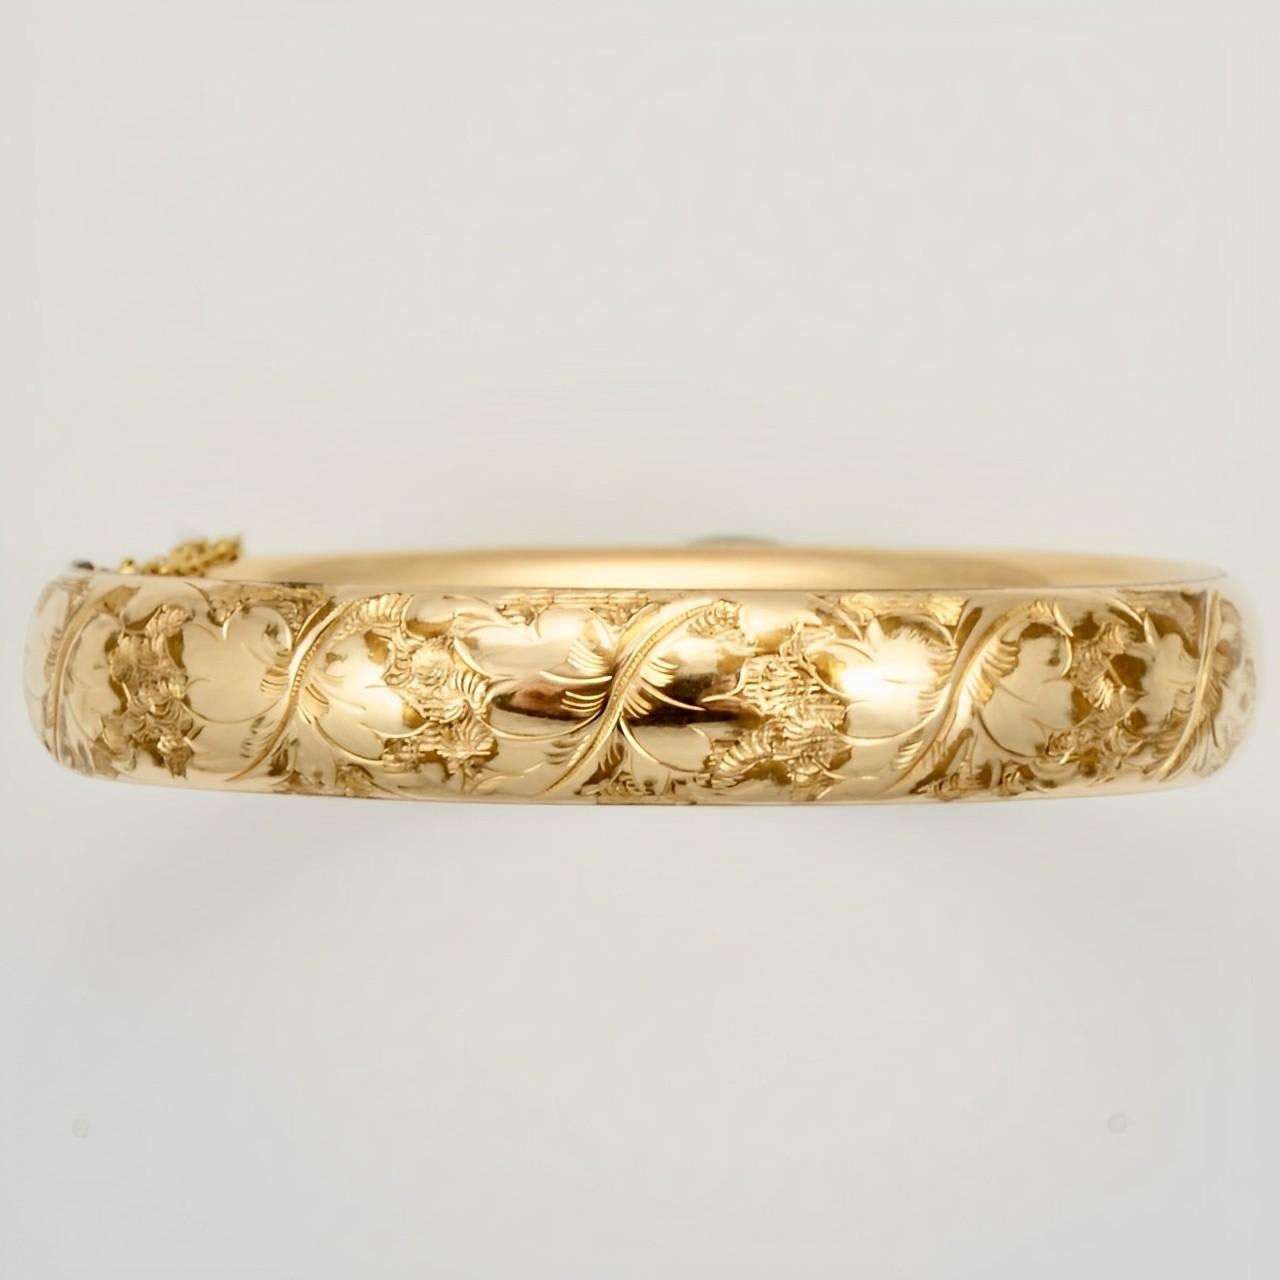 Bates et Bacon magnifique bracelet gravé en or rose antique.  Il s'ouvre à l'aide d'un bouton poussoir. Le bracelet est légèrement ovale, les dimensions intérieures sont de 6 cm / 2.3 pouces par 5.5 cm / 2.1 pouces, et la largeur est de 1.1 cm / .4